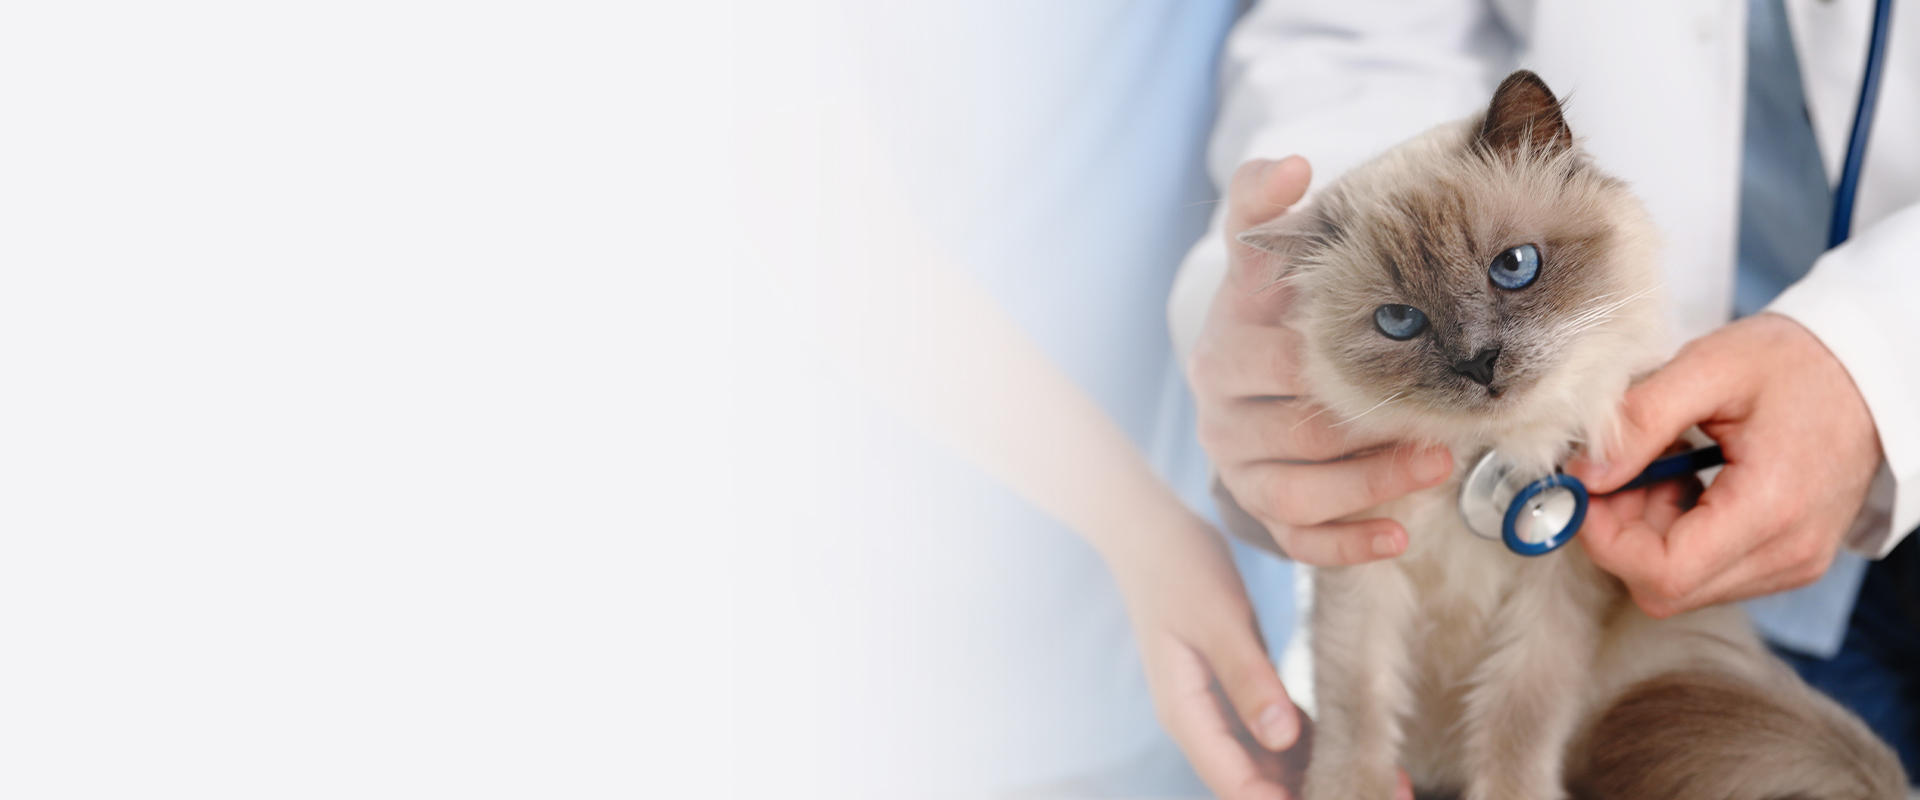 veterinární lékař kontrola kočka